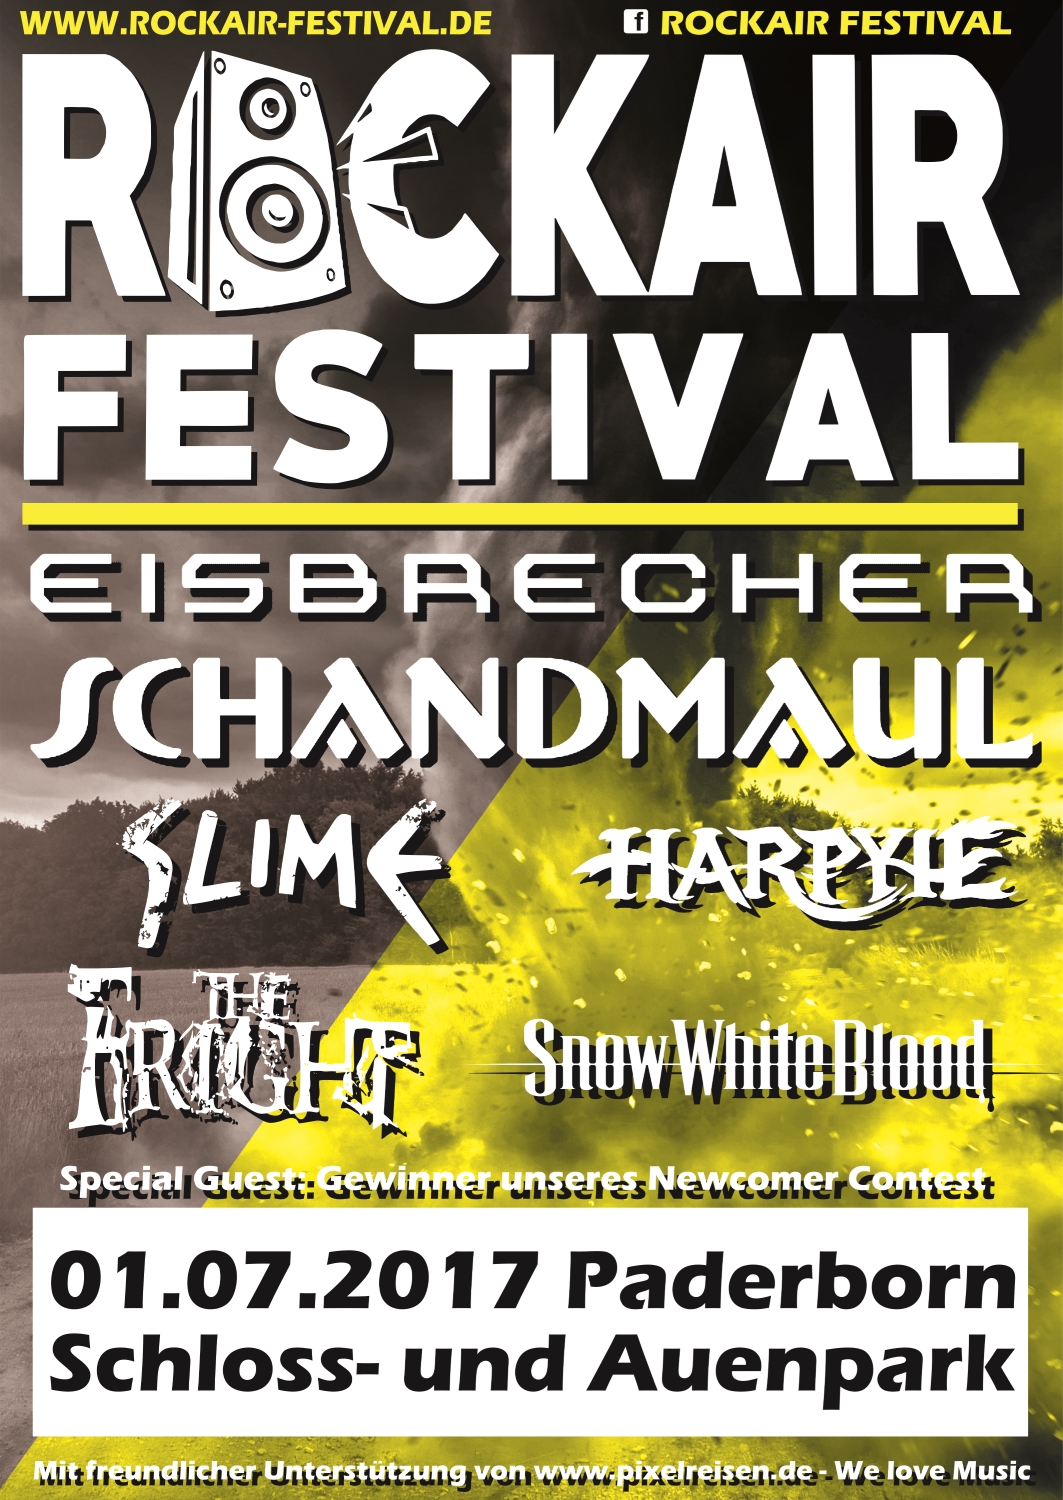 Plakat des RockAir Festivals 2017, Quelle: RockAir Festival